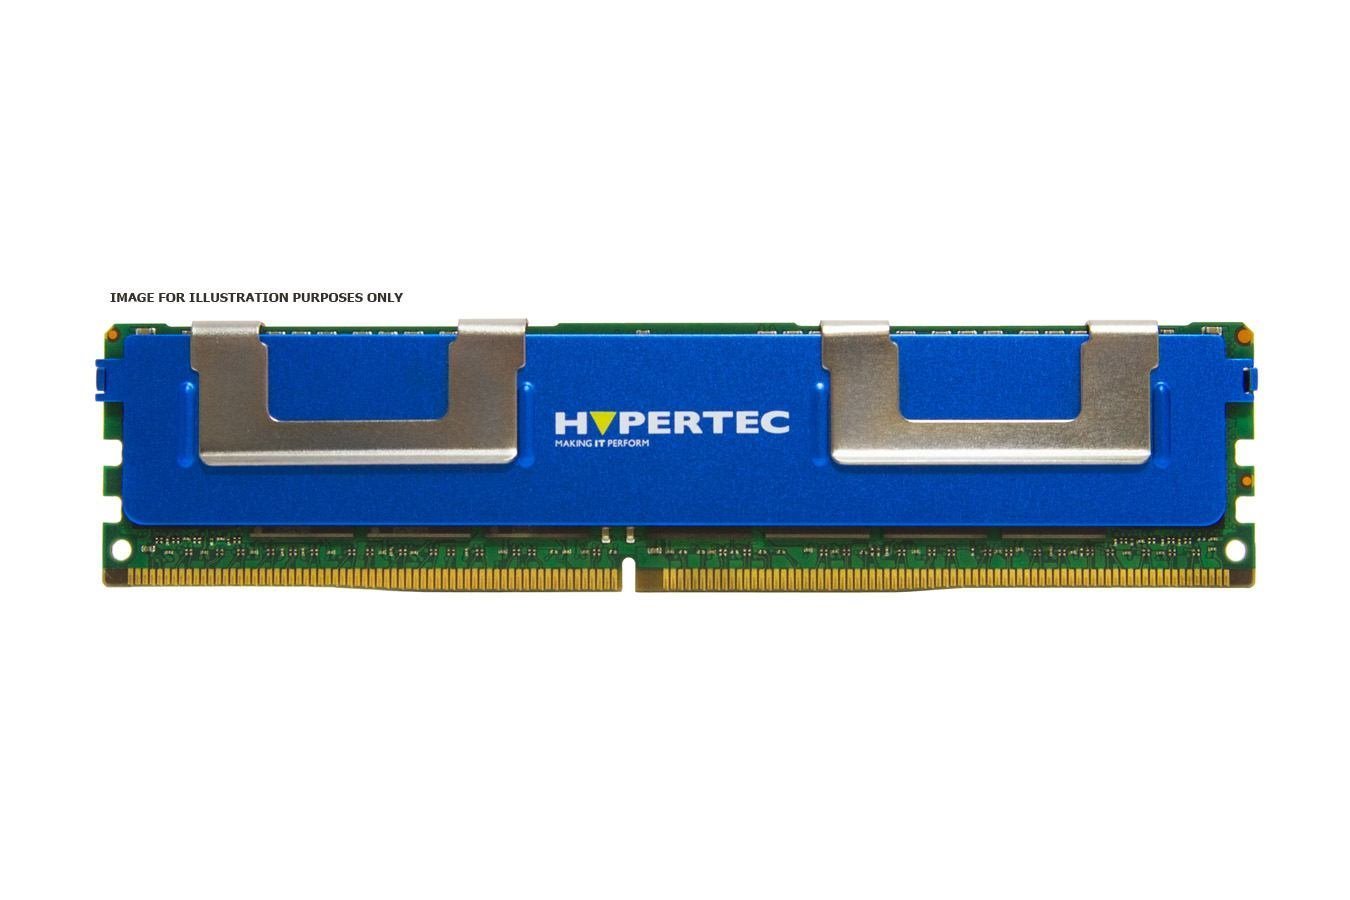 Hypertec RAM Module - 8 GB (1 x 8GB) - DDR3-1600/PC3-12800 DDR3 SDRAM - 1600 MHz